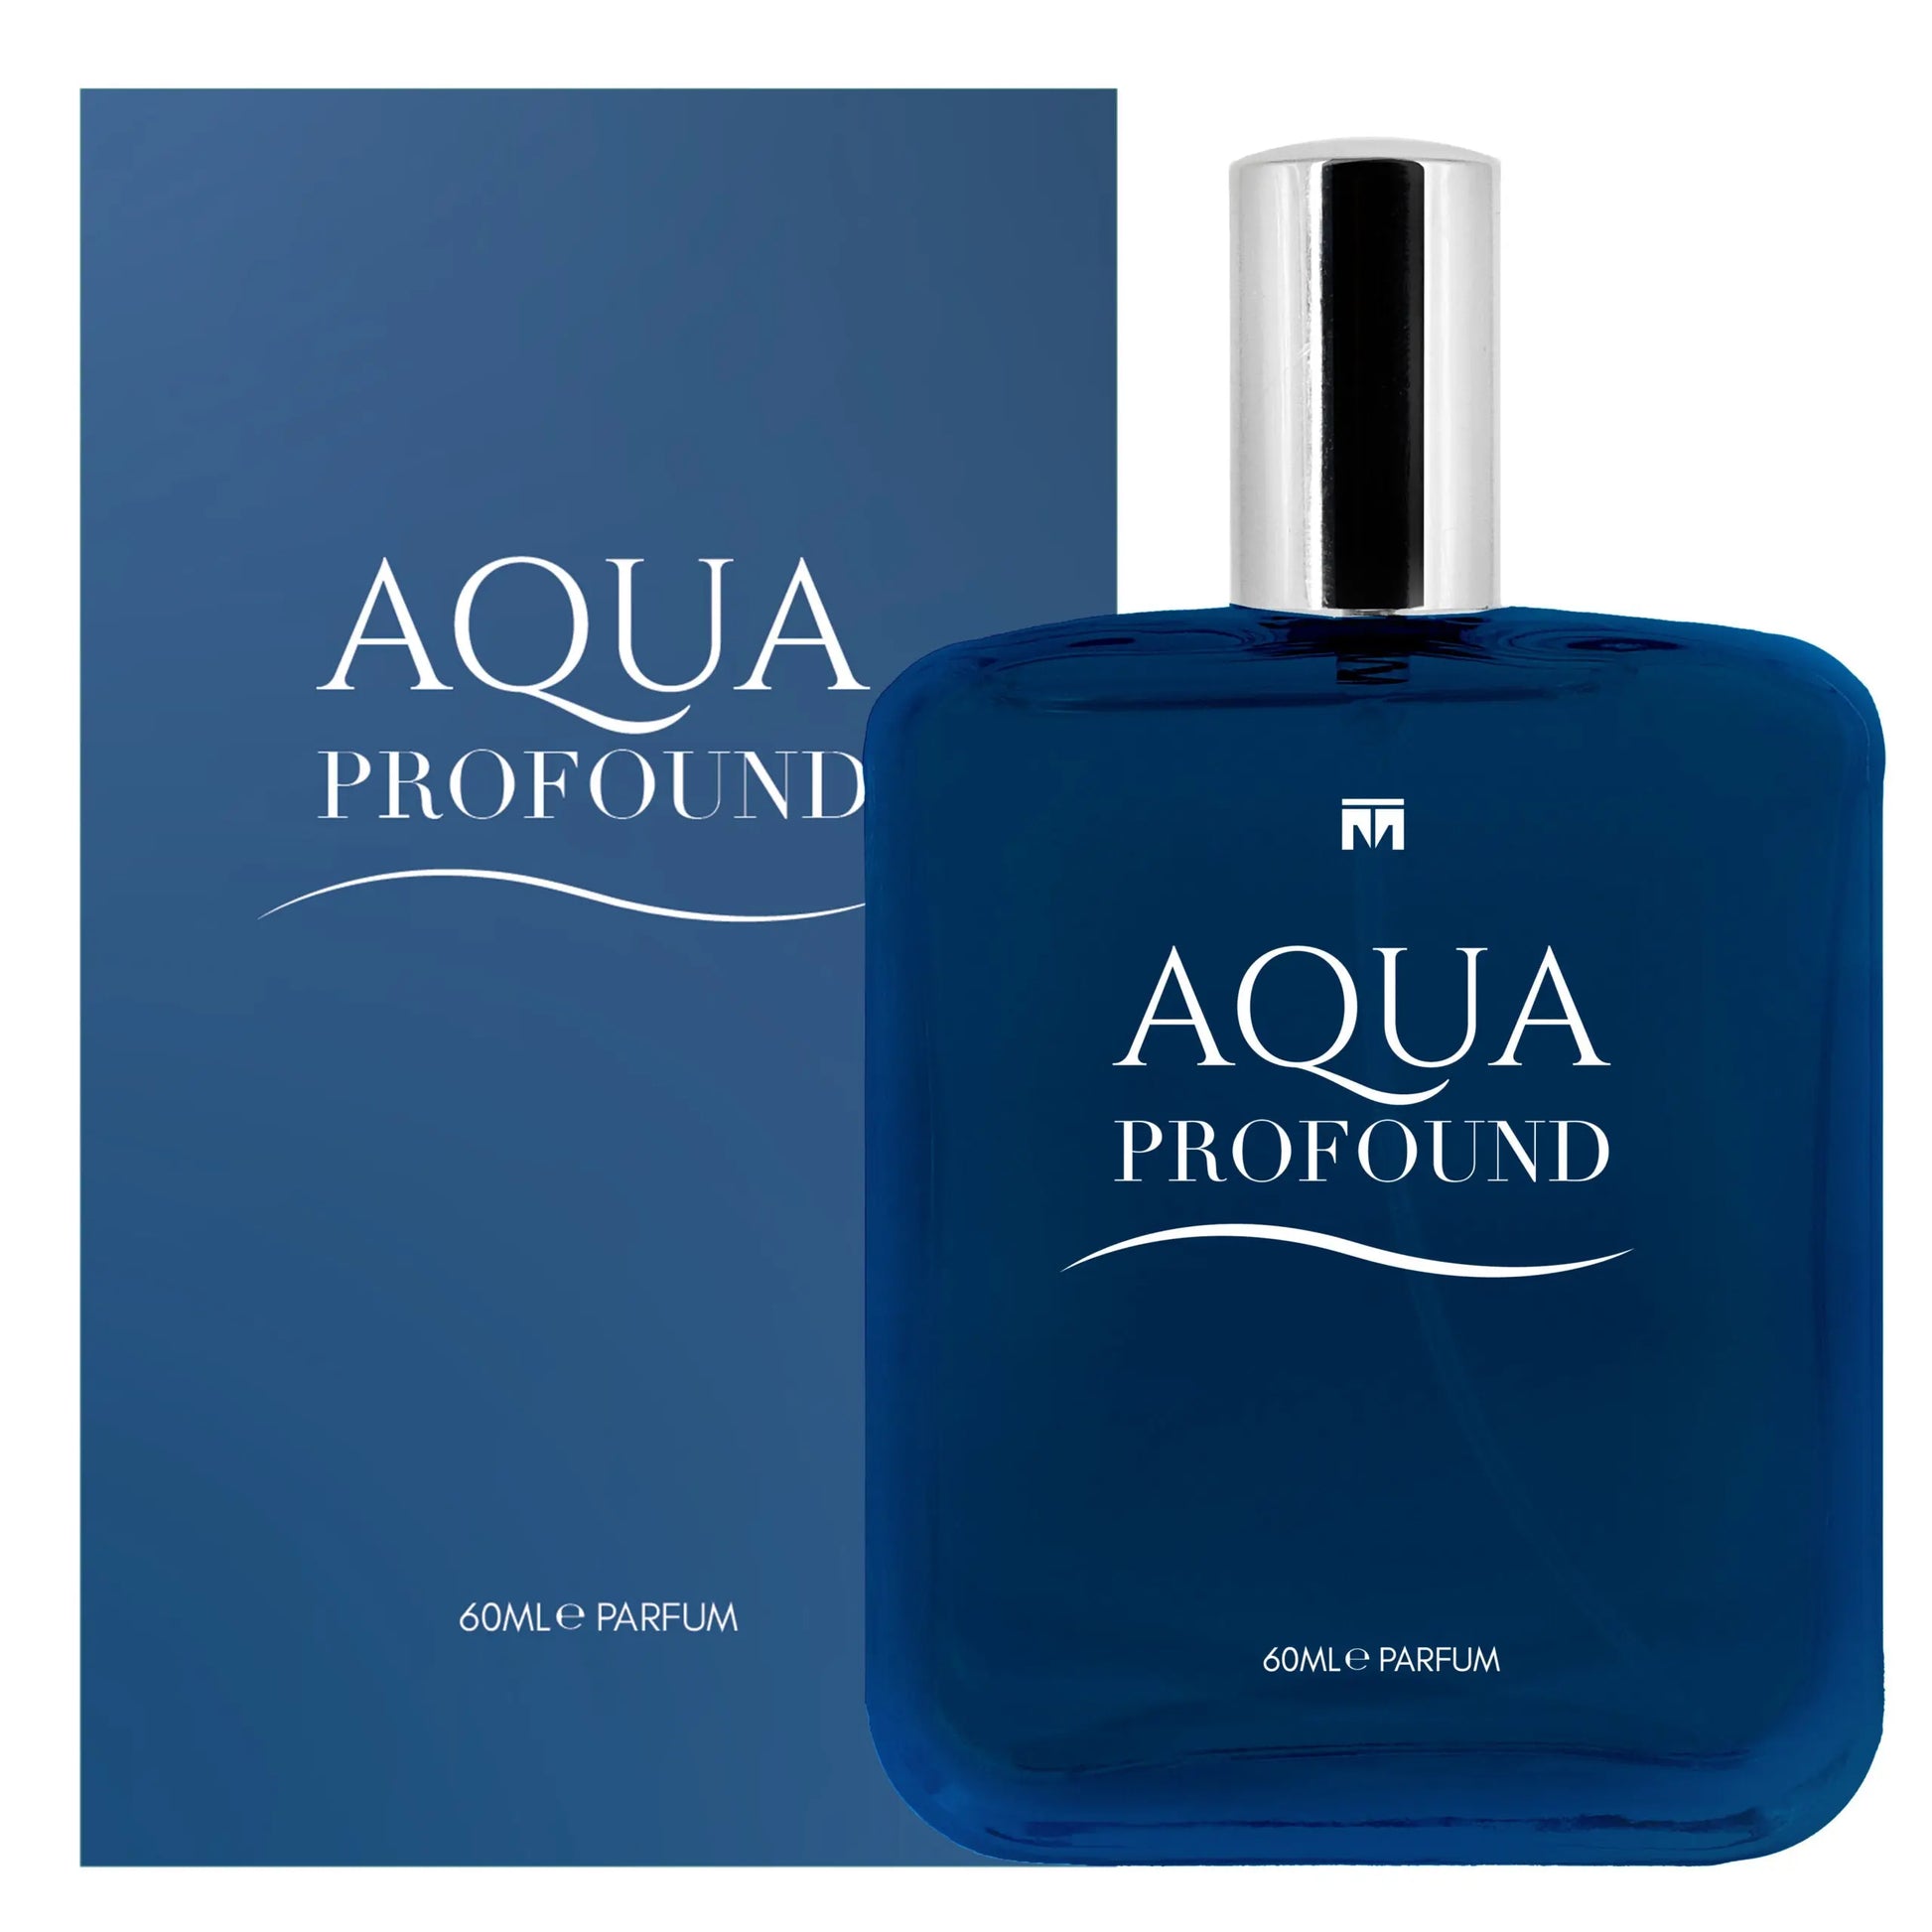 Aqua Profound Classic - 60ml Eau De Parfum - Dapper Industries SA